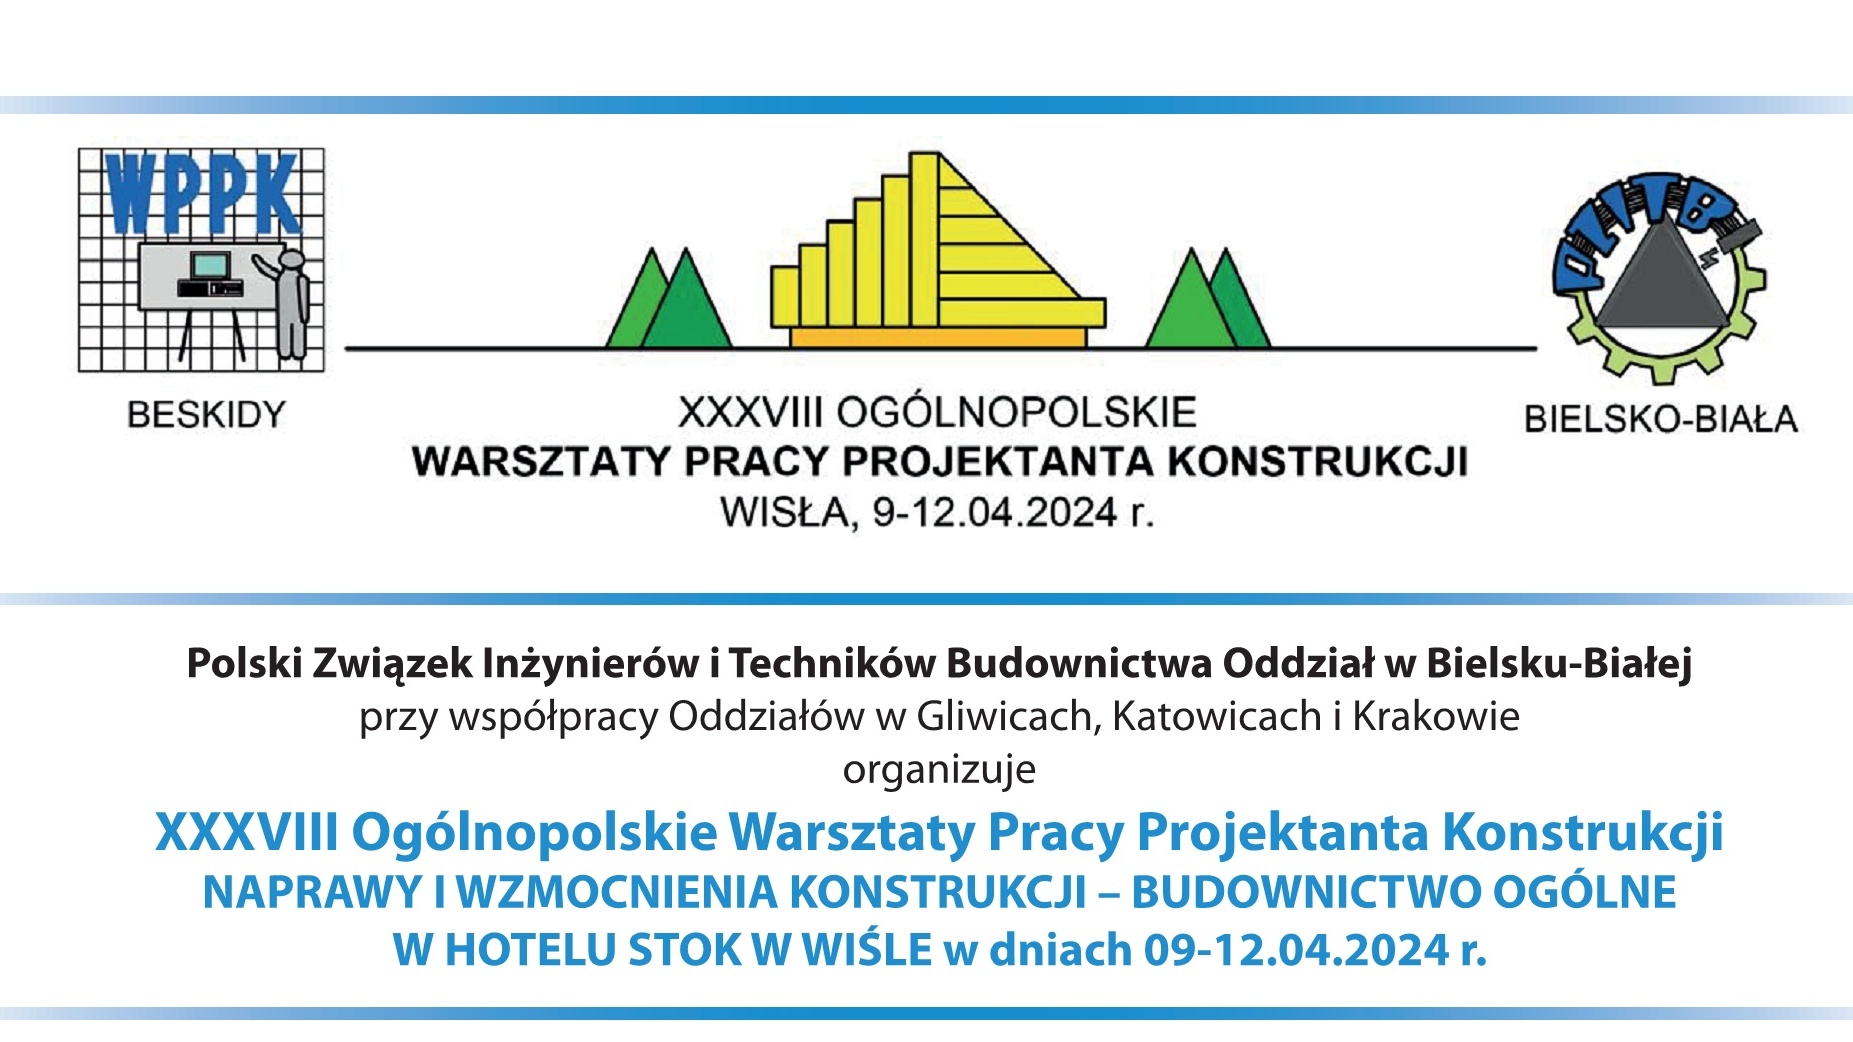 XXXVIII Ogólnopolskie Warsztaty Pracy Projektanta Konstrukcji 9-12.04.2024 r.